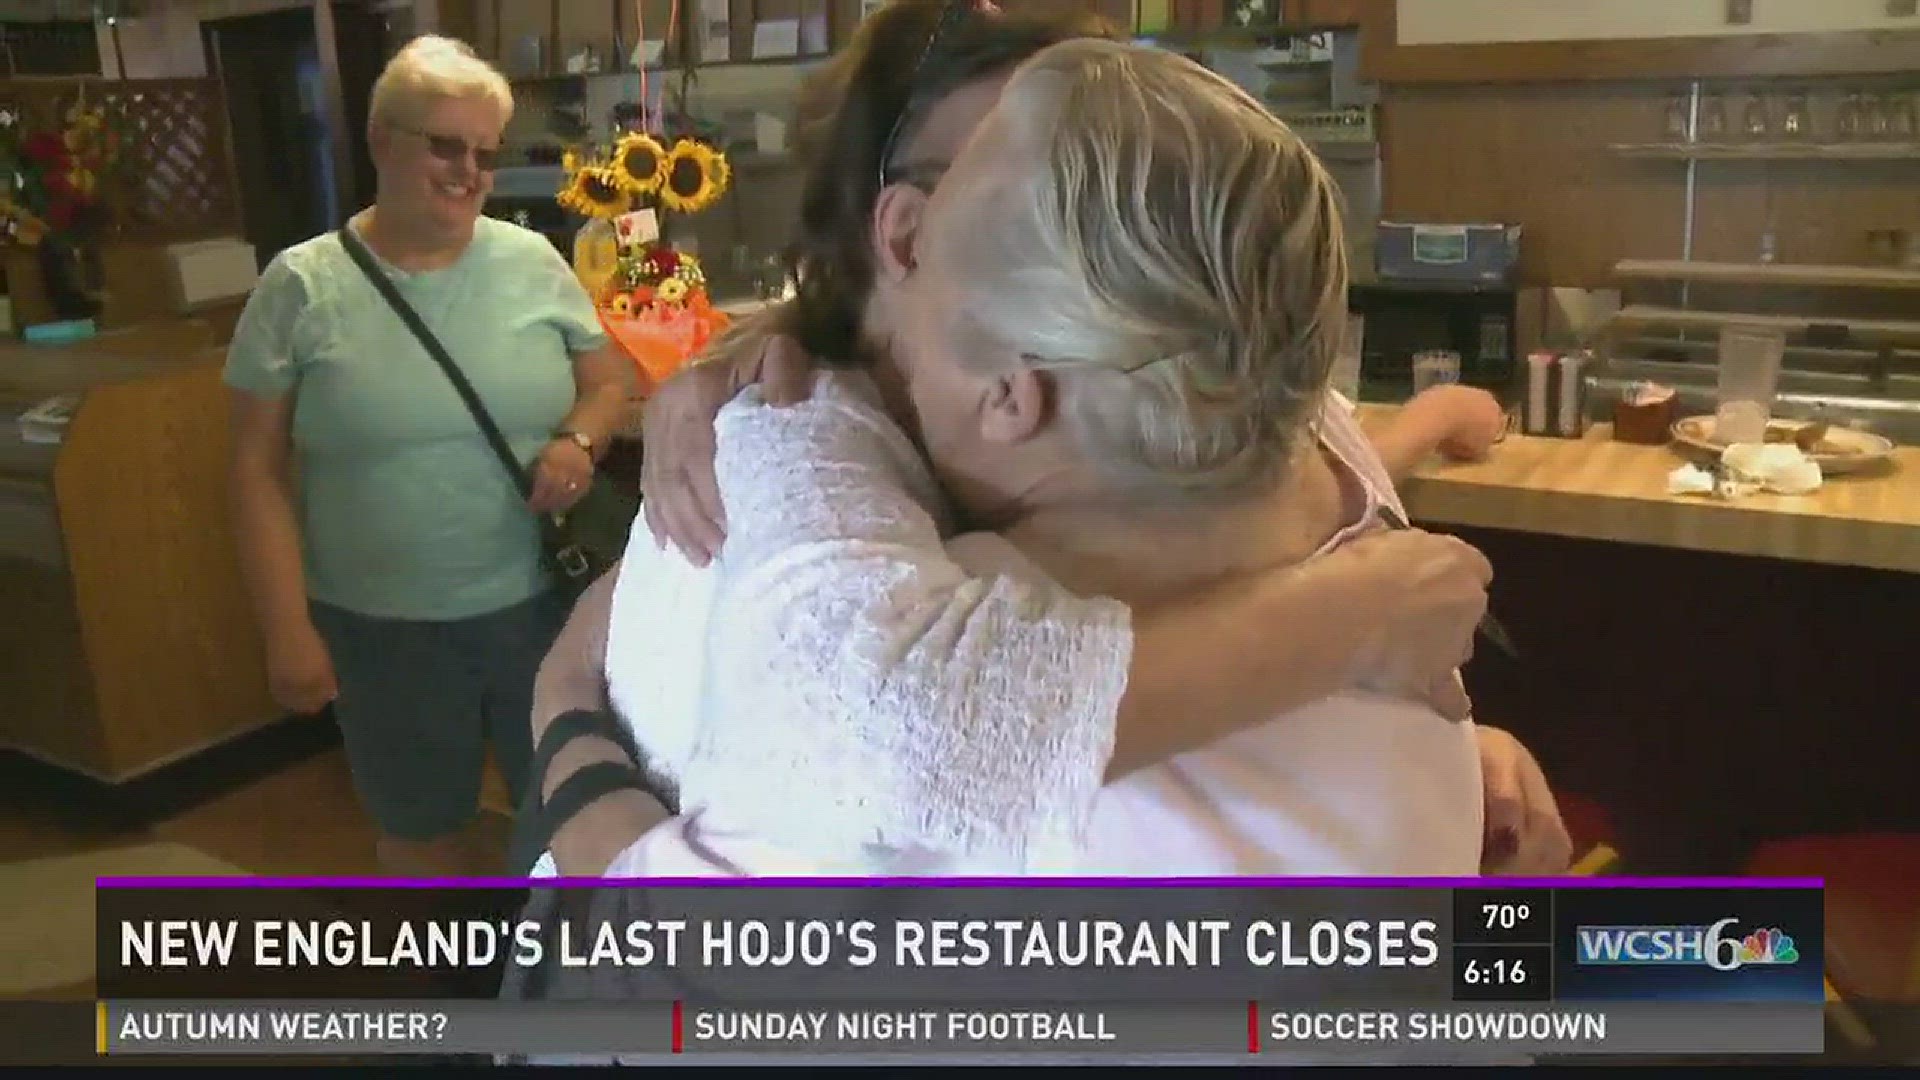 New England's last HoJo's restaurant closes